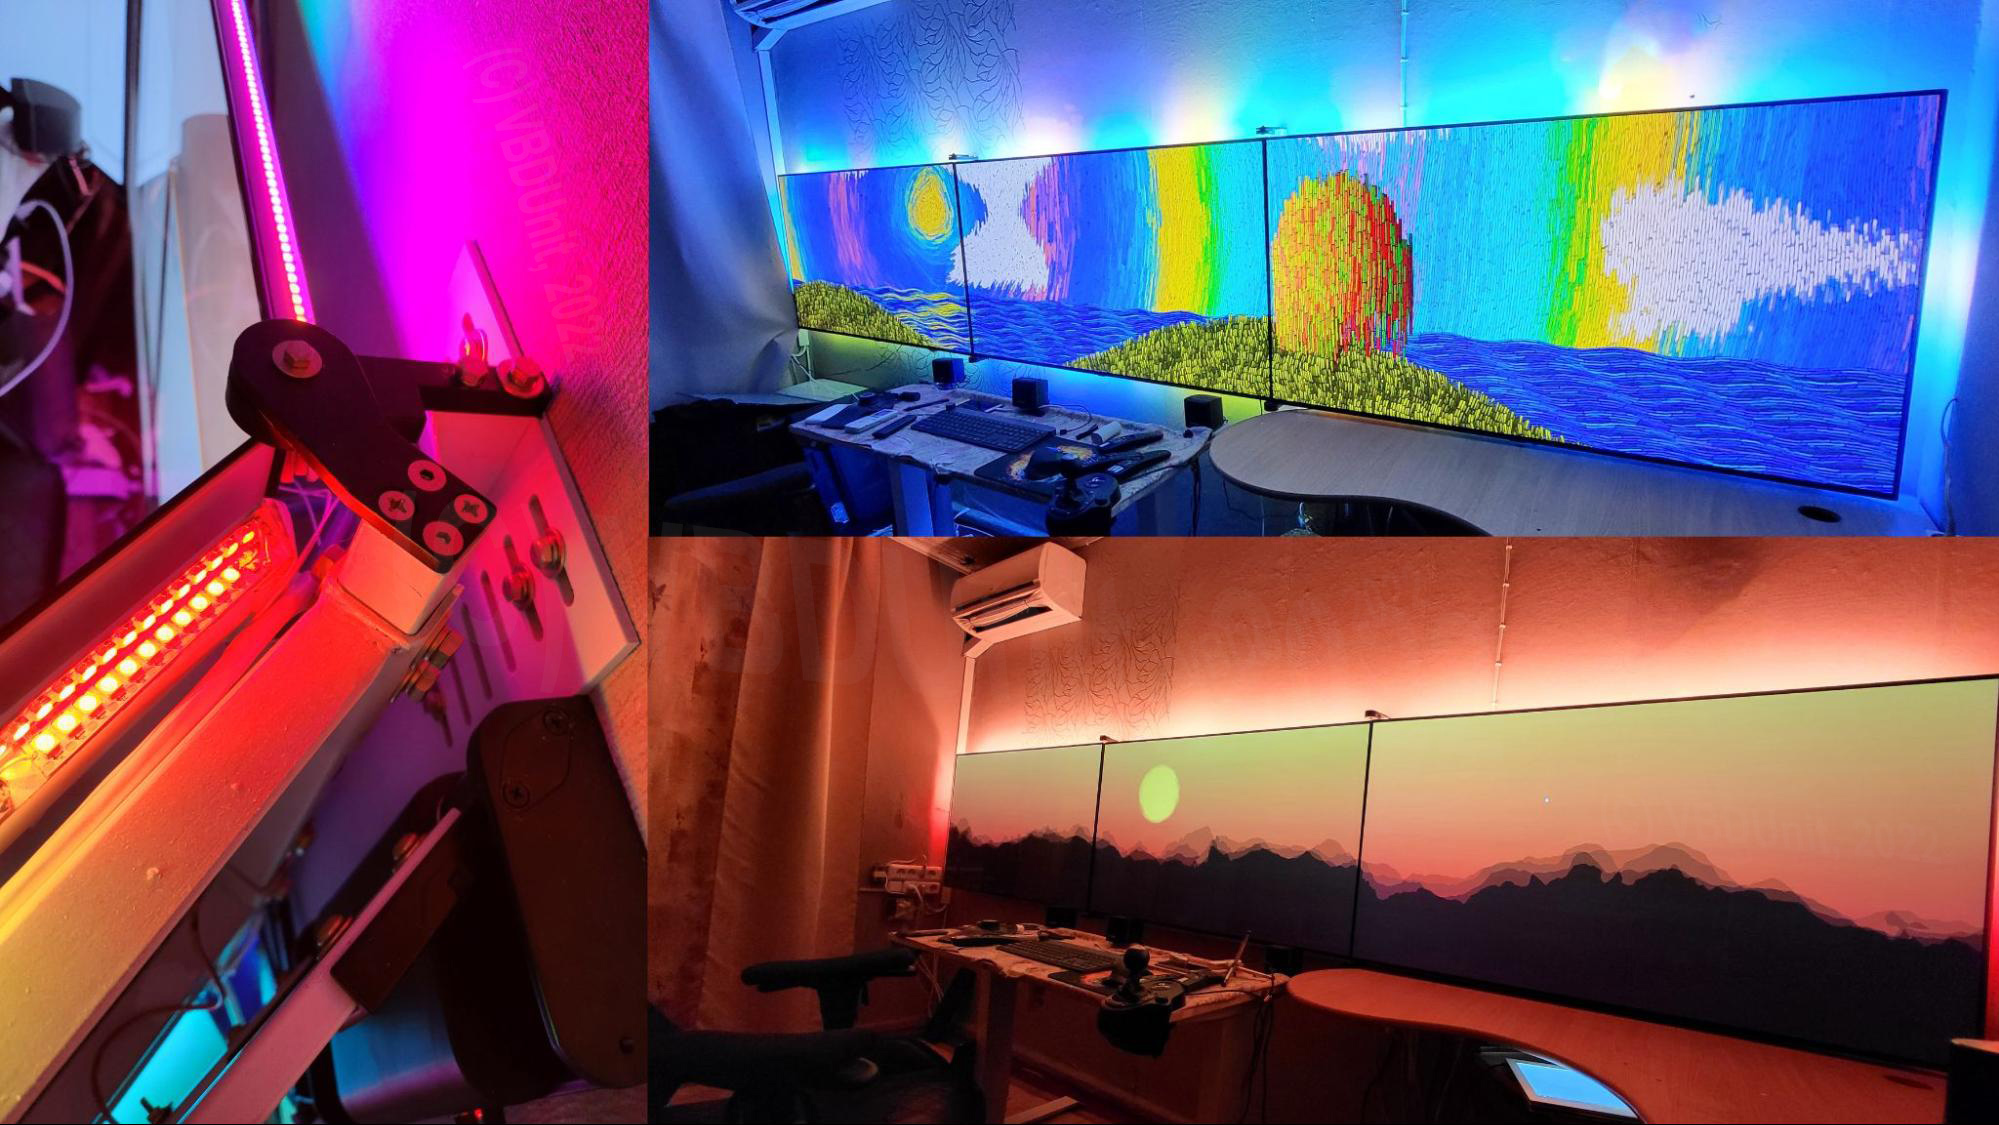 Подсветка вместе с экранами может создавать в комнате любую атмосферу и настроение